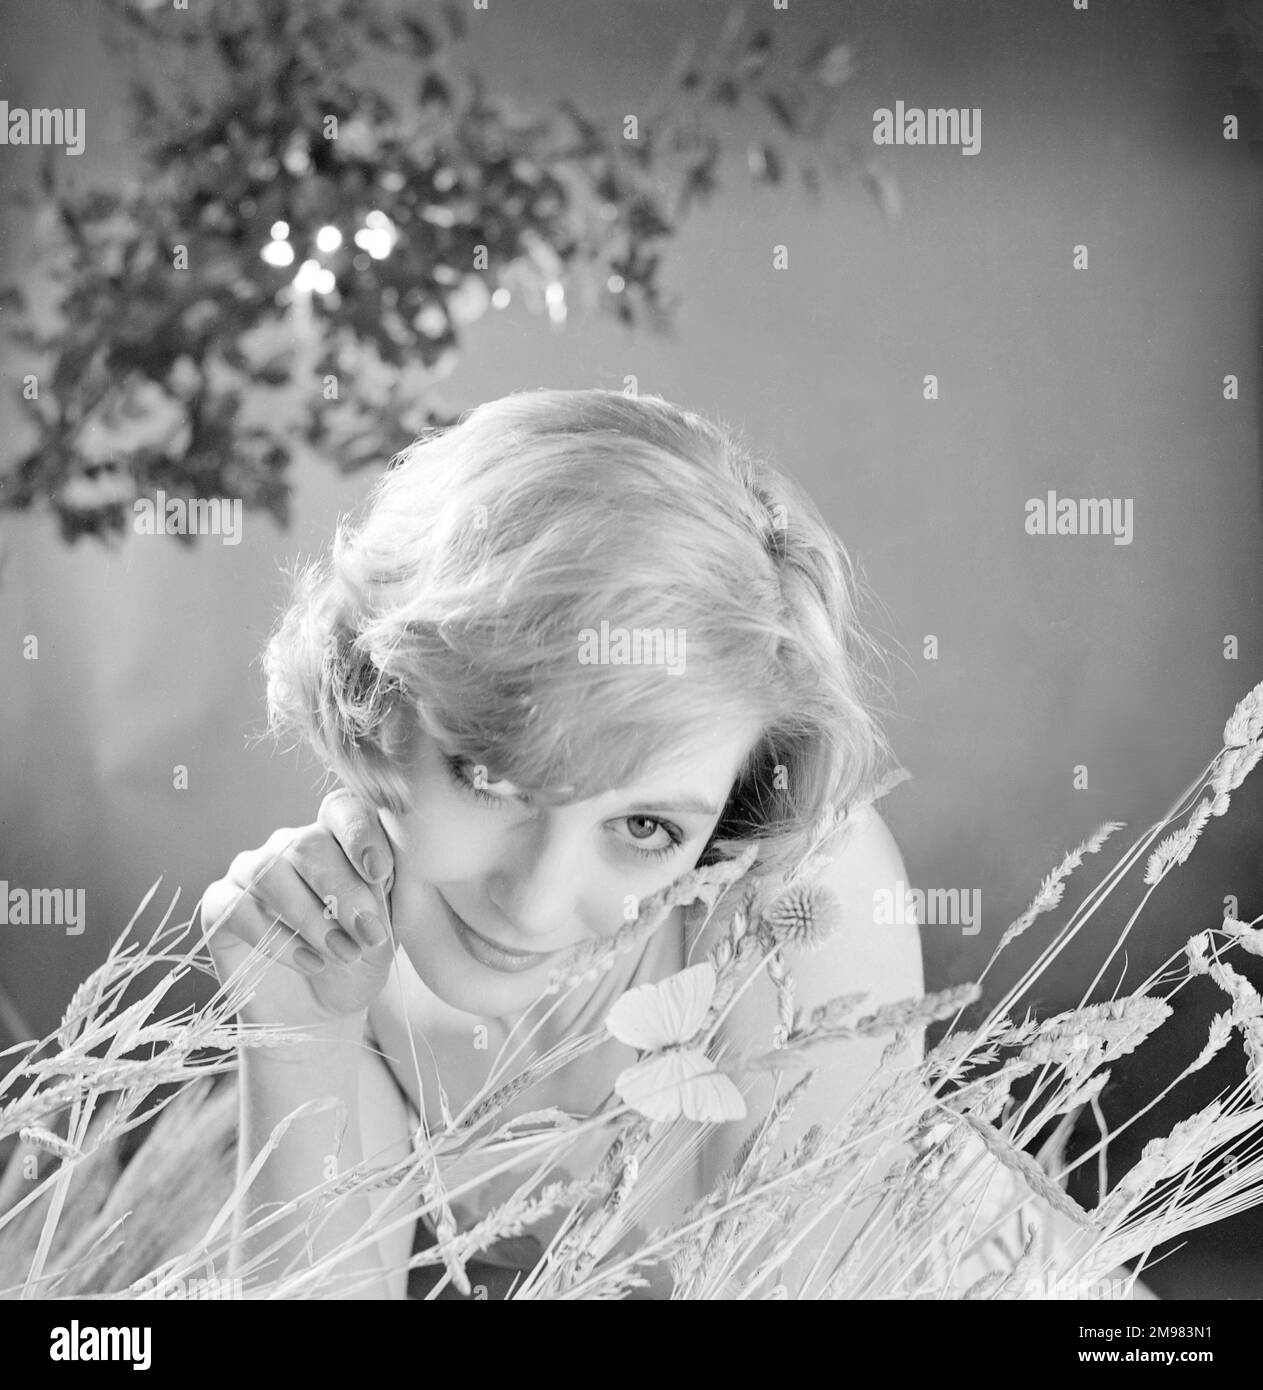 Werbung für Nivea Shampoo -- weibliches Model (Sandra Paul), das im Gras posiert. Stockfoto